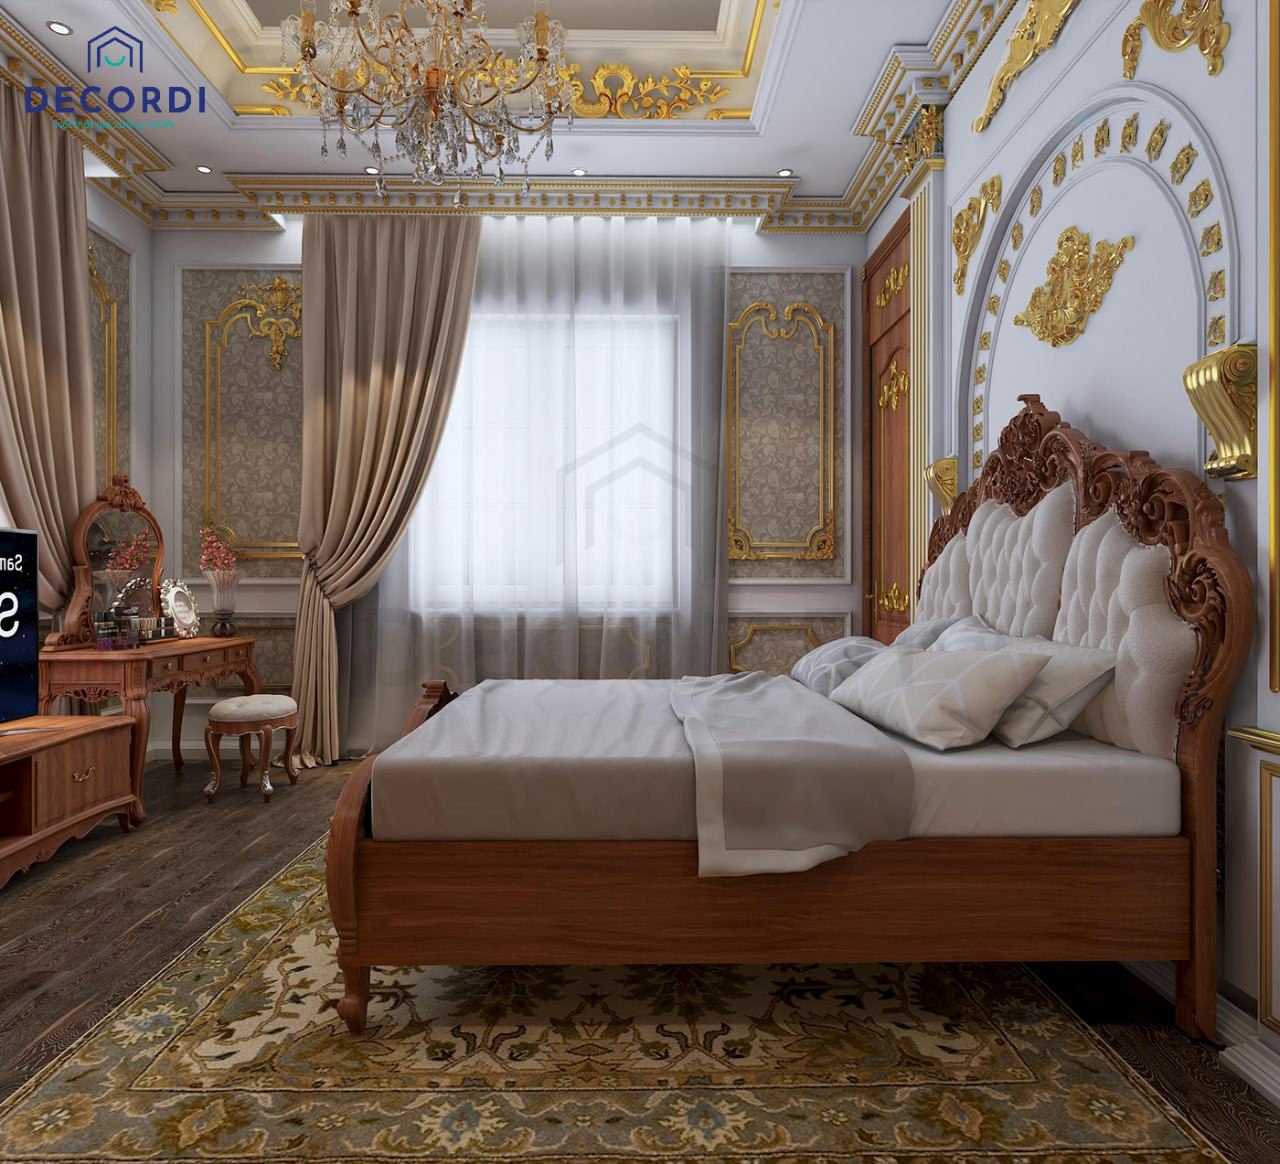 Tường phòng ngủ được làm phào chỉ nổi mạ vàng nổi bật, thảm trải sàn hoa văn mang đậm nét truyền thống